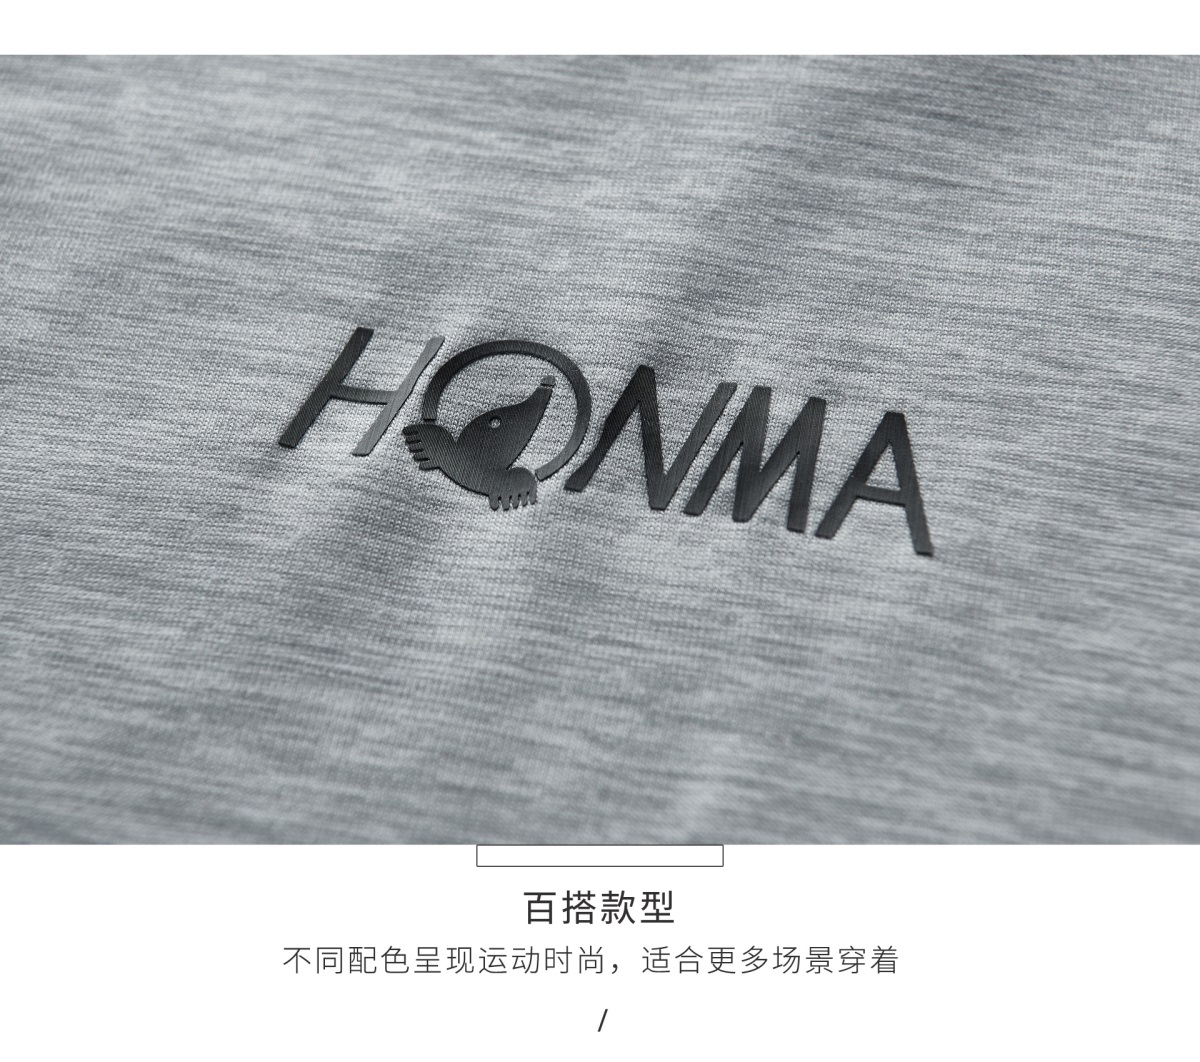 HONMA新款高尔夫男子短袖T恤顺滑面料悬垂舒适圆领百搭透气